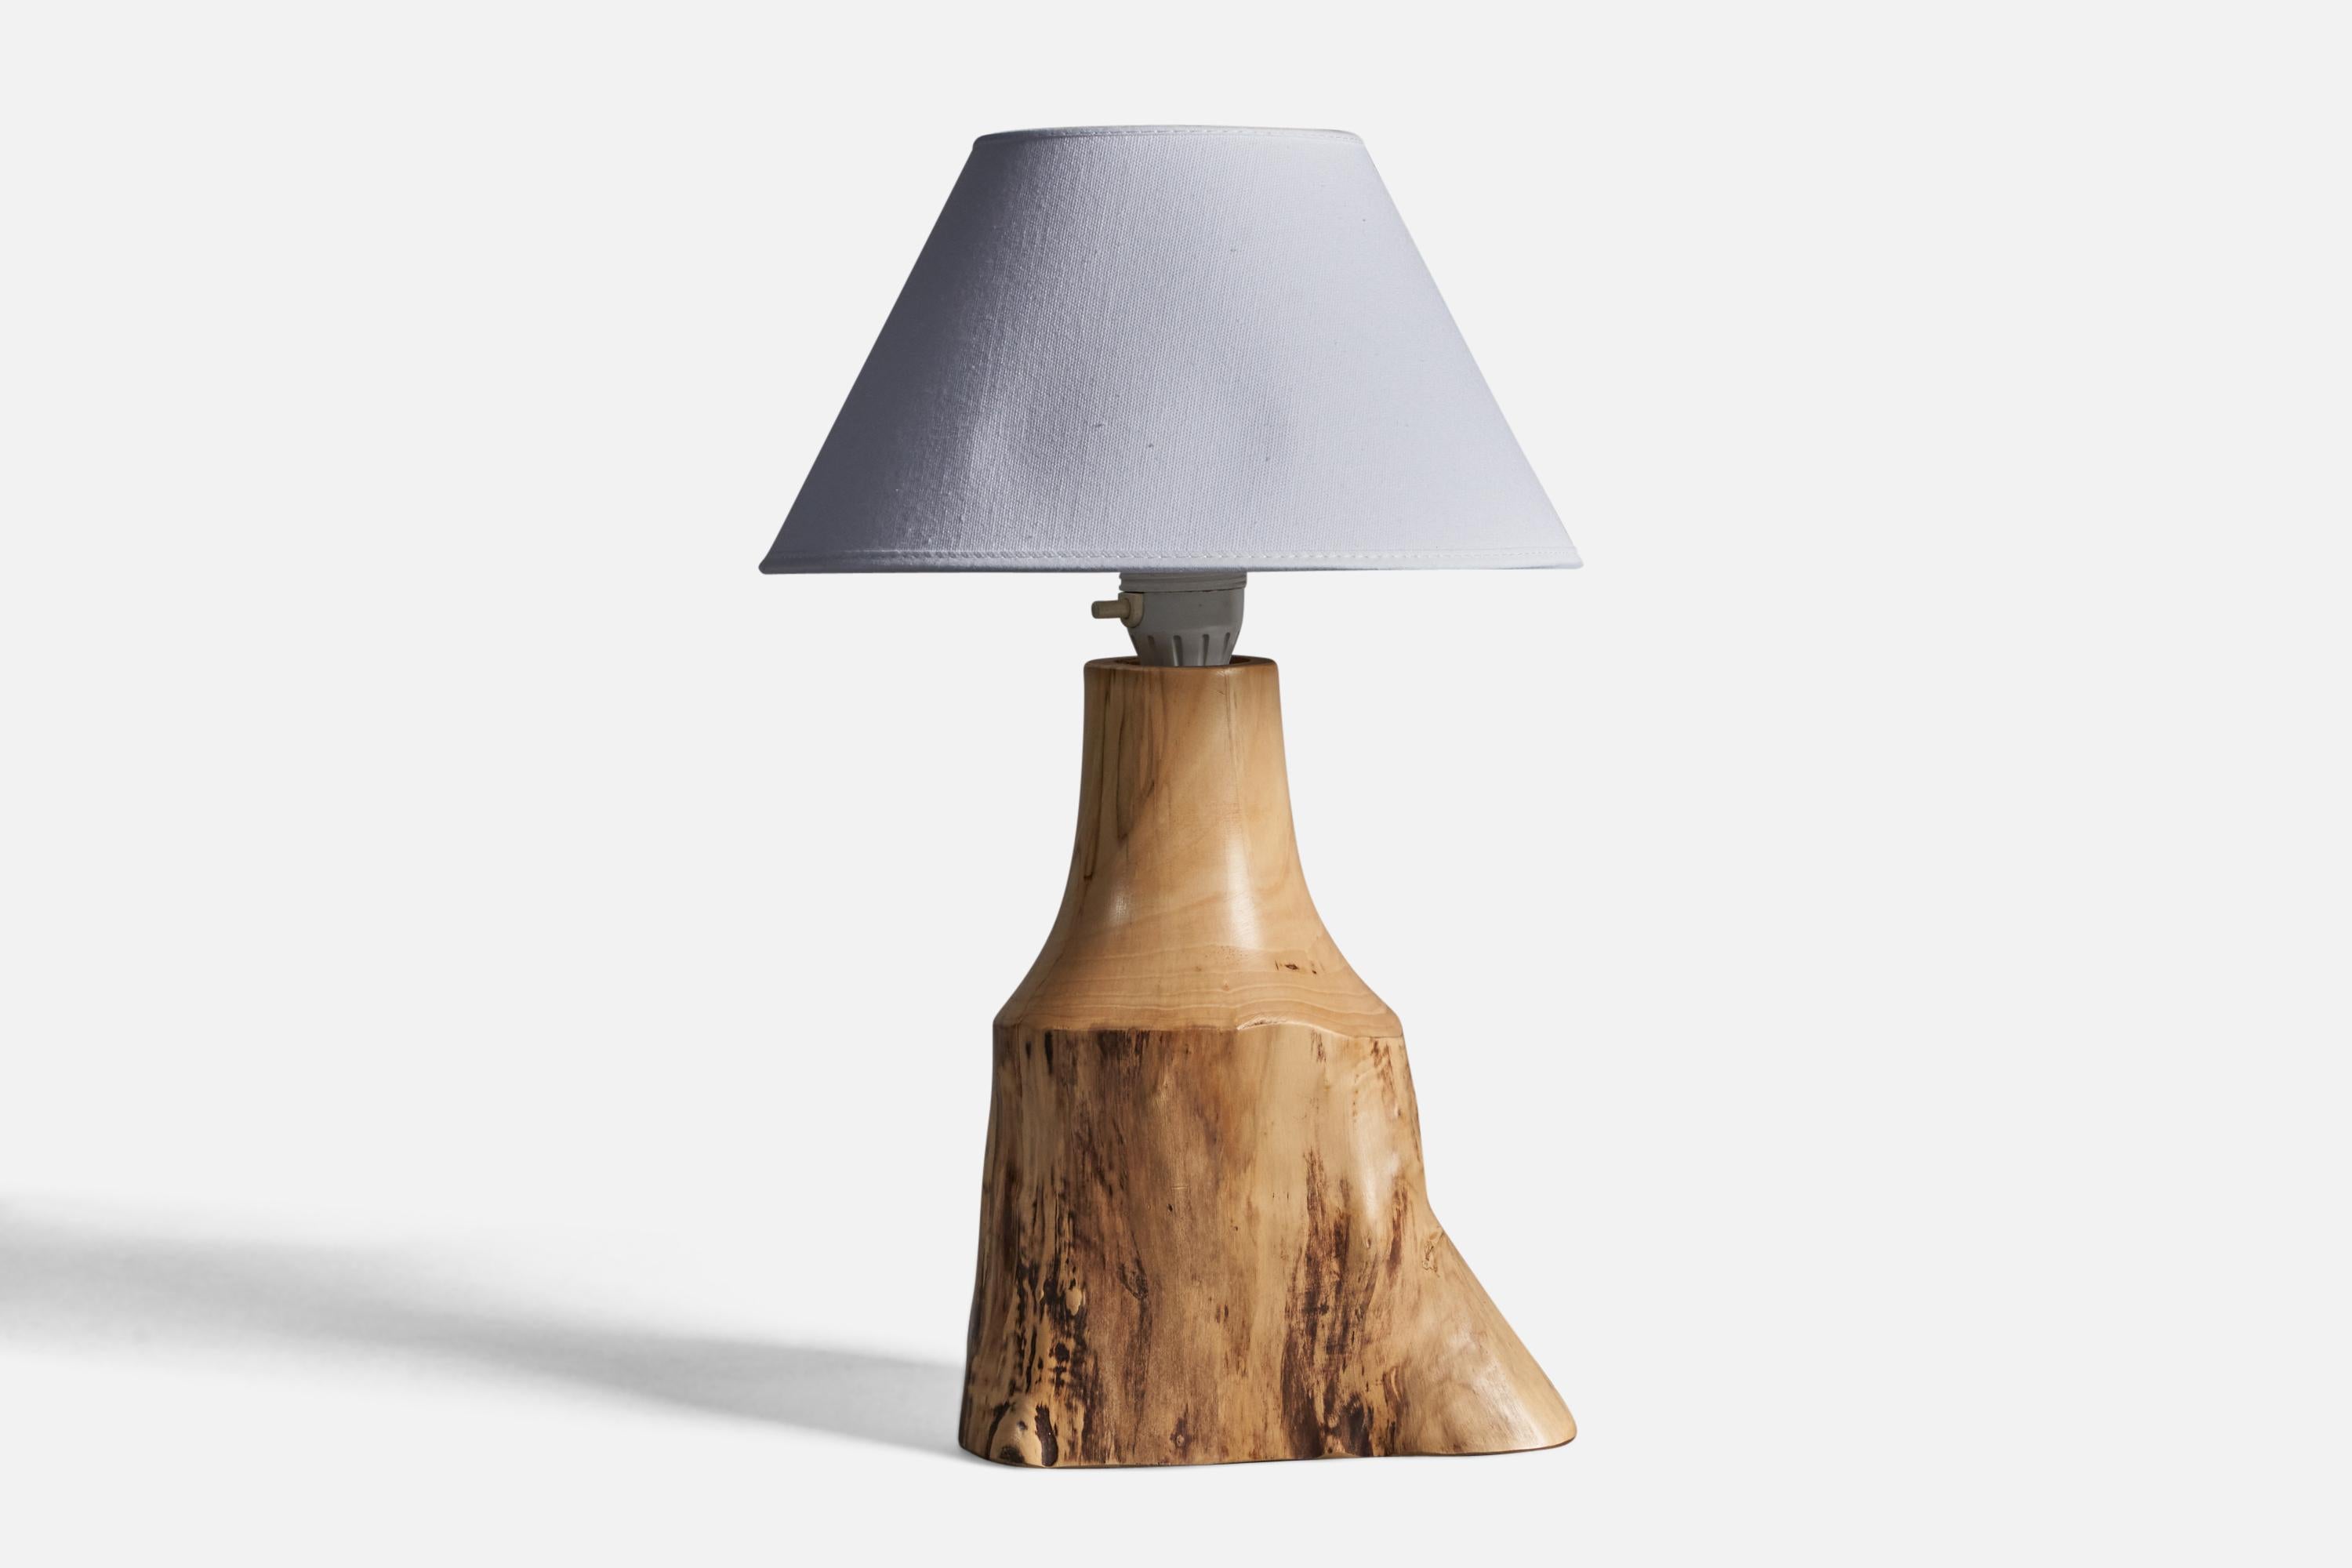 Lampe de table en bois de coton aux formes libres, conçue et produite par Sigvard Nilsson, Suède, années 1970.

Dimensions de la lampe (pouces) : 12.25